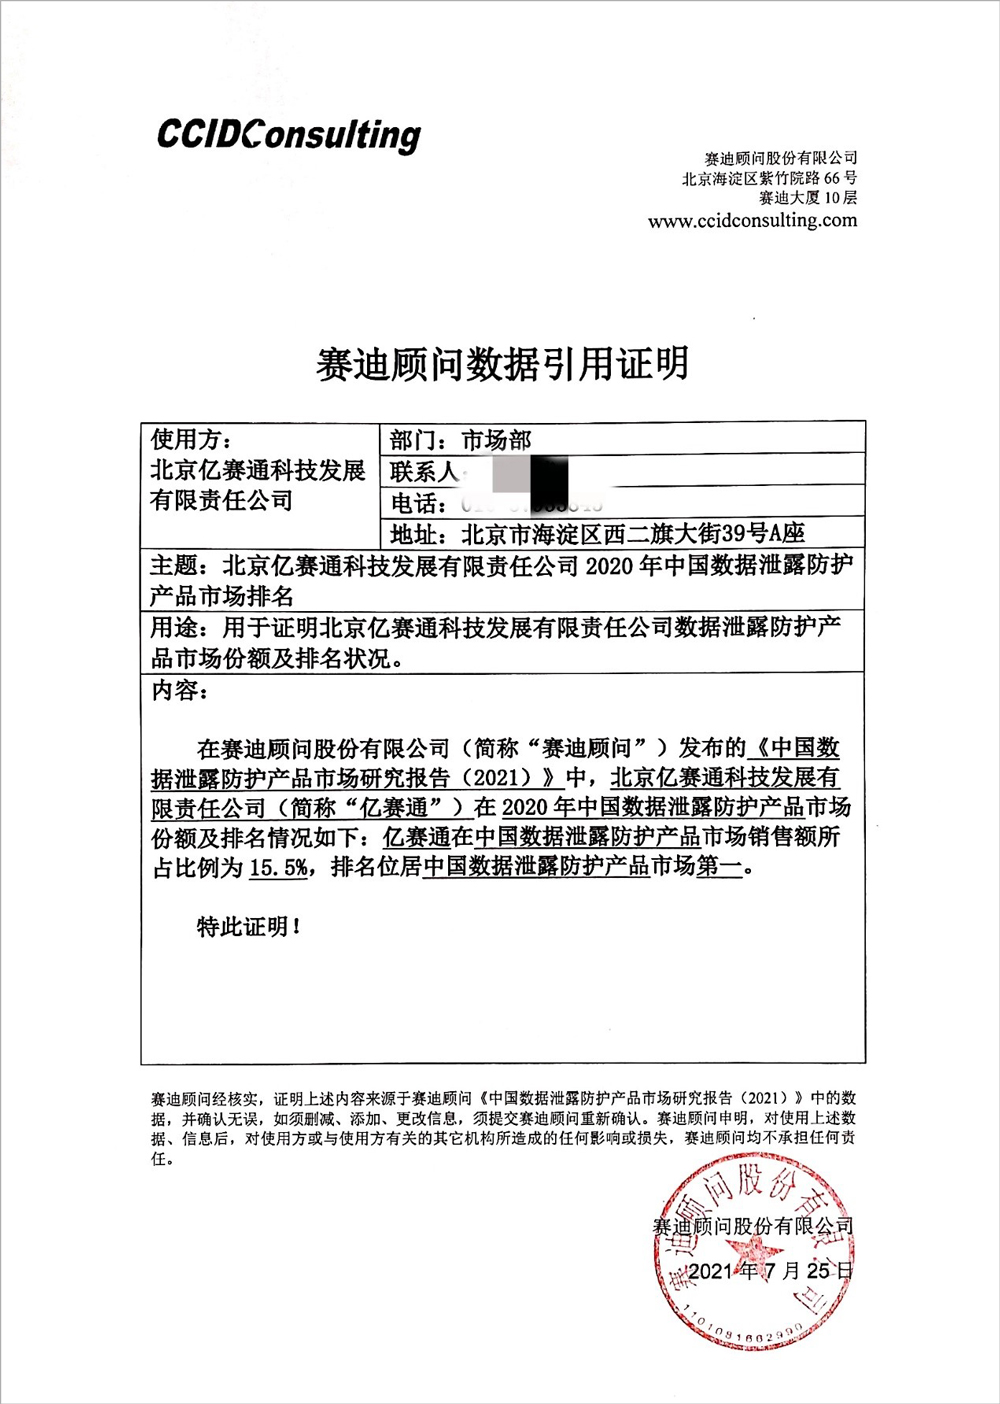 报告 | 亿赛通再次入选《中国数据泄露防护产品市场研究报告》